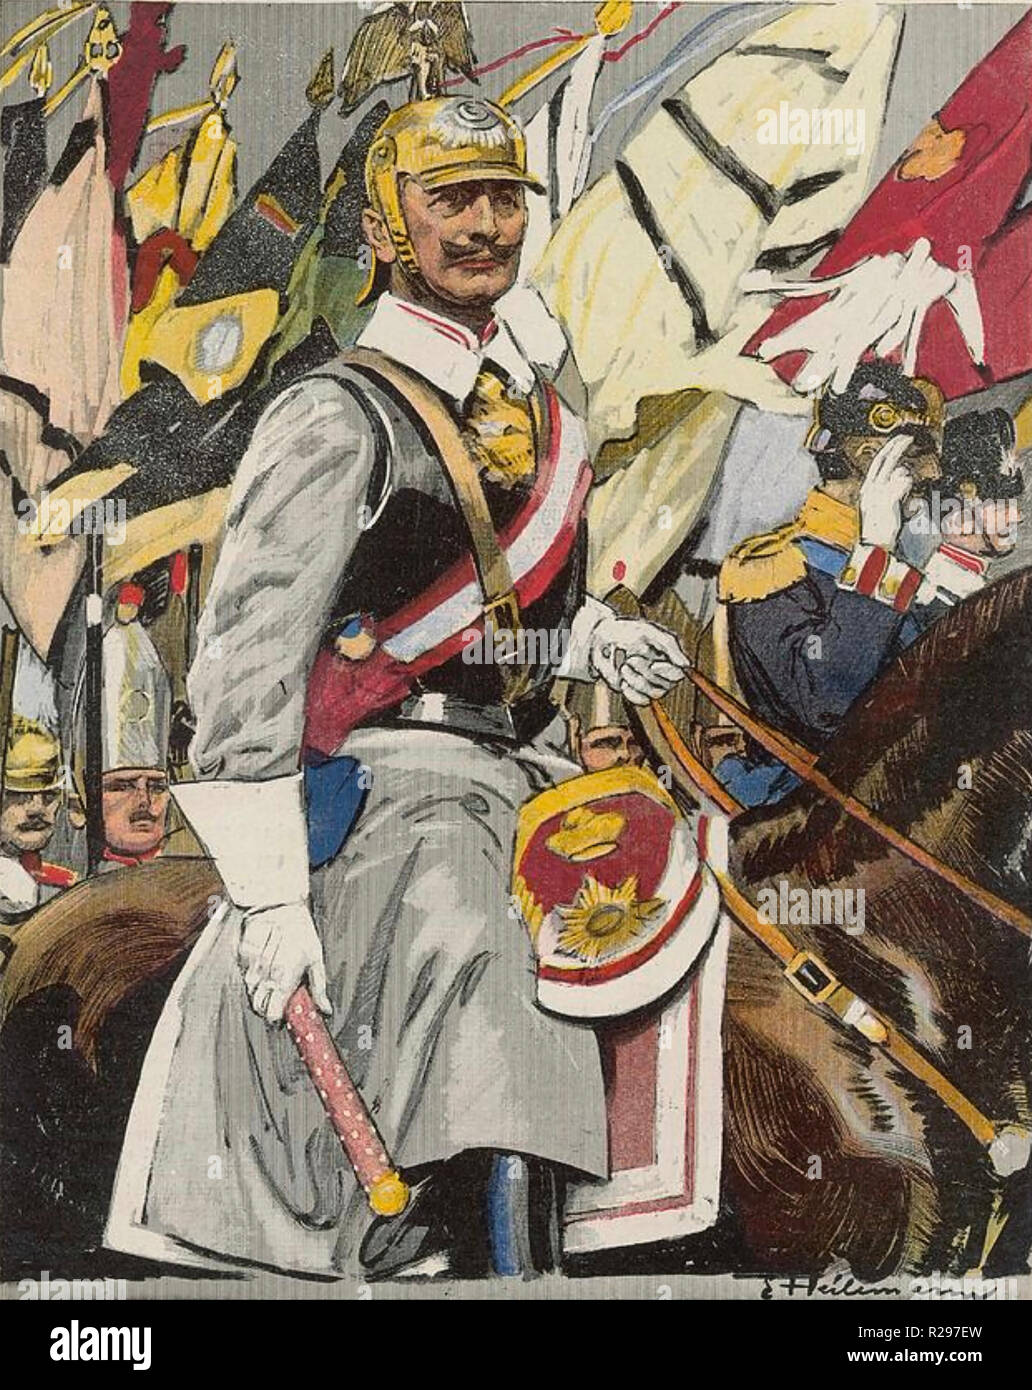 Le kaiser Guillaume II d'Allemagne dans un magazine allemand illustration en 1915 Banque D'Images